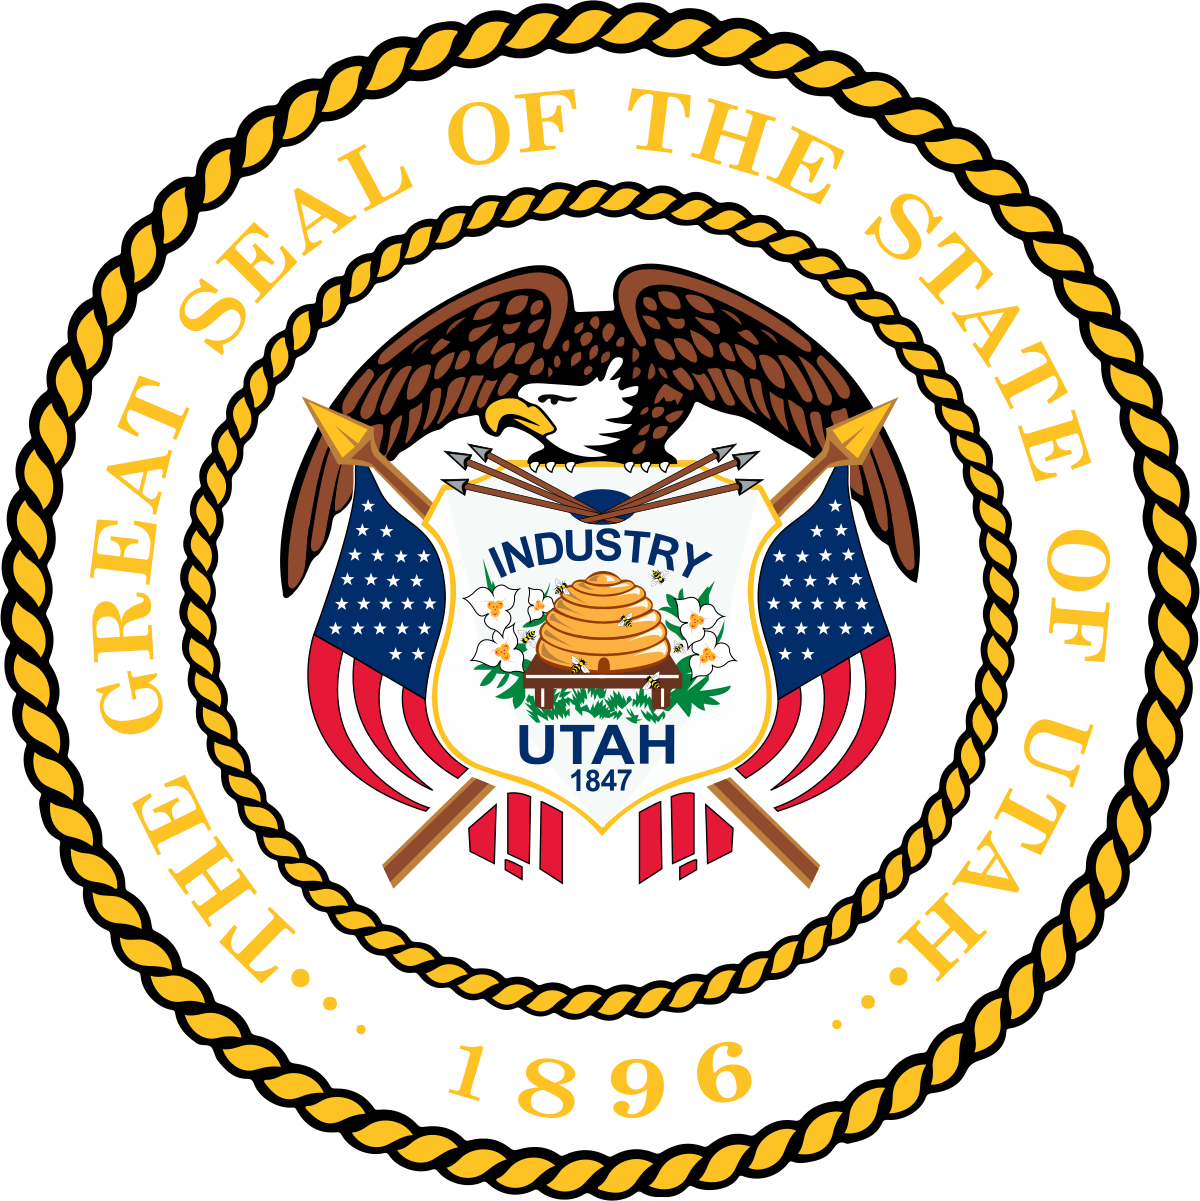 A Utah state seal or logo